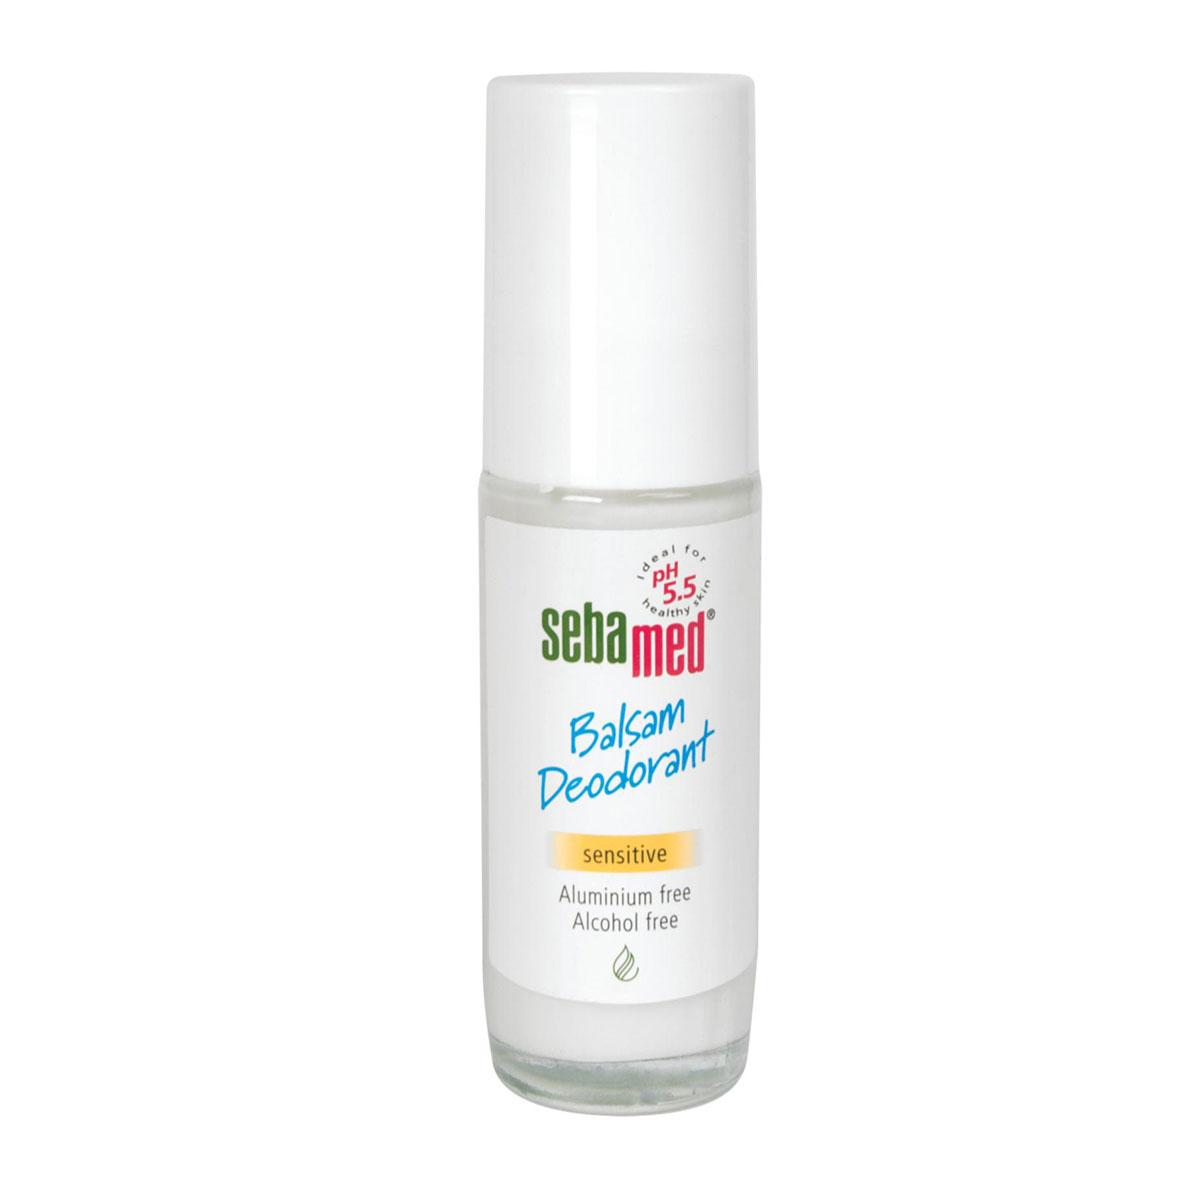 مام رول بالزام بعد از اصلاح (پوست های حساس، فاقد الکل و آلومینیوم) - Sebamed balsam deodorant 50ml